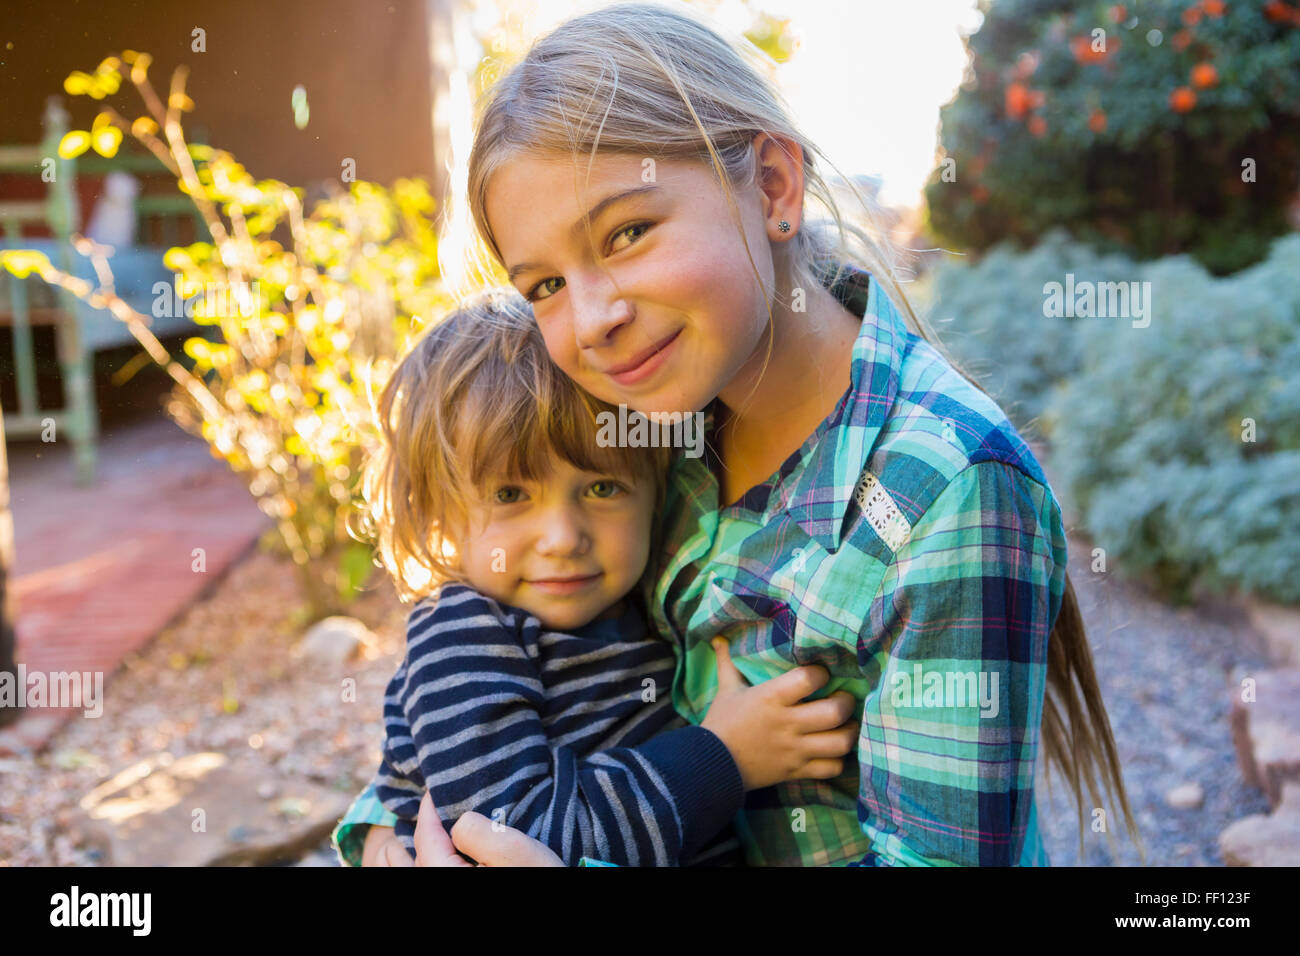 Frère et soeur de race blanche hugging outdoors Banque D'Images